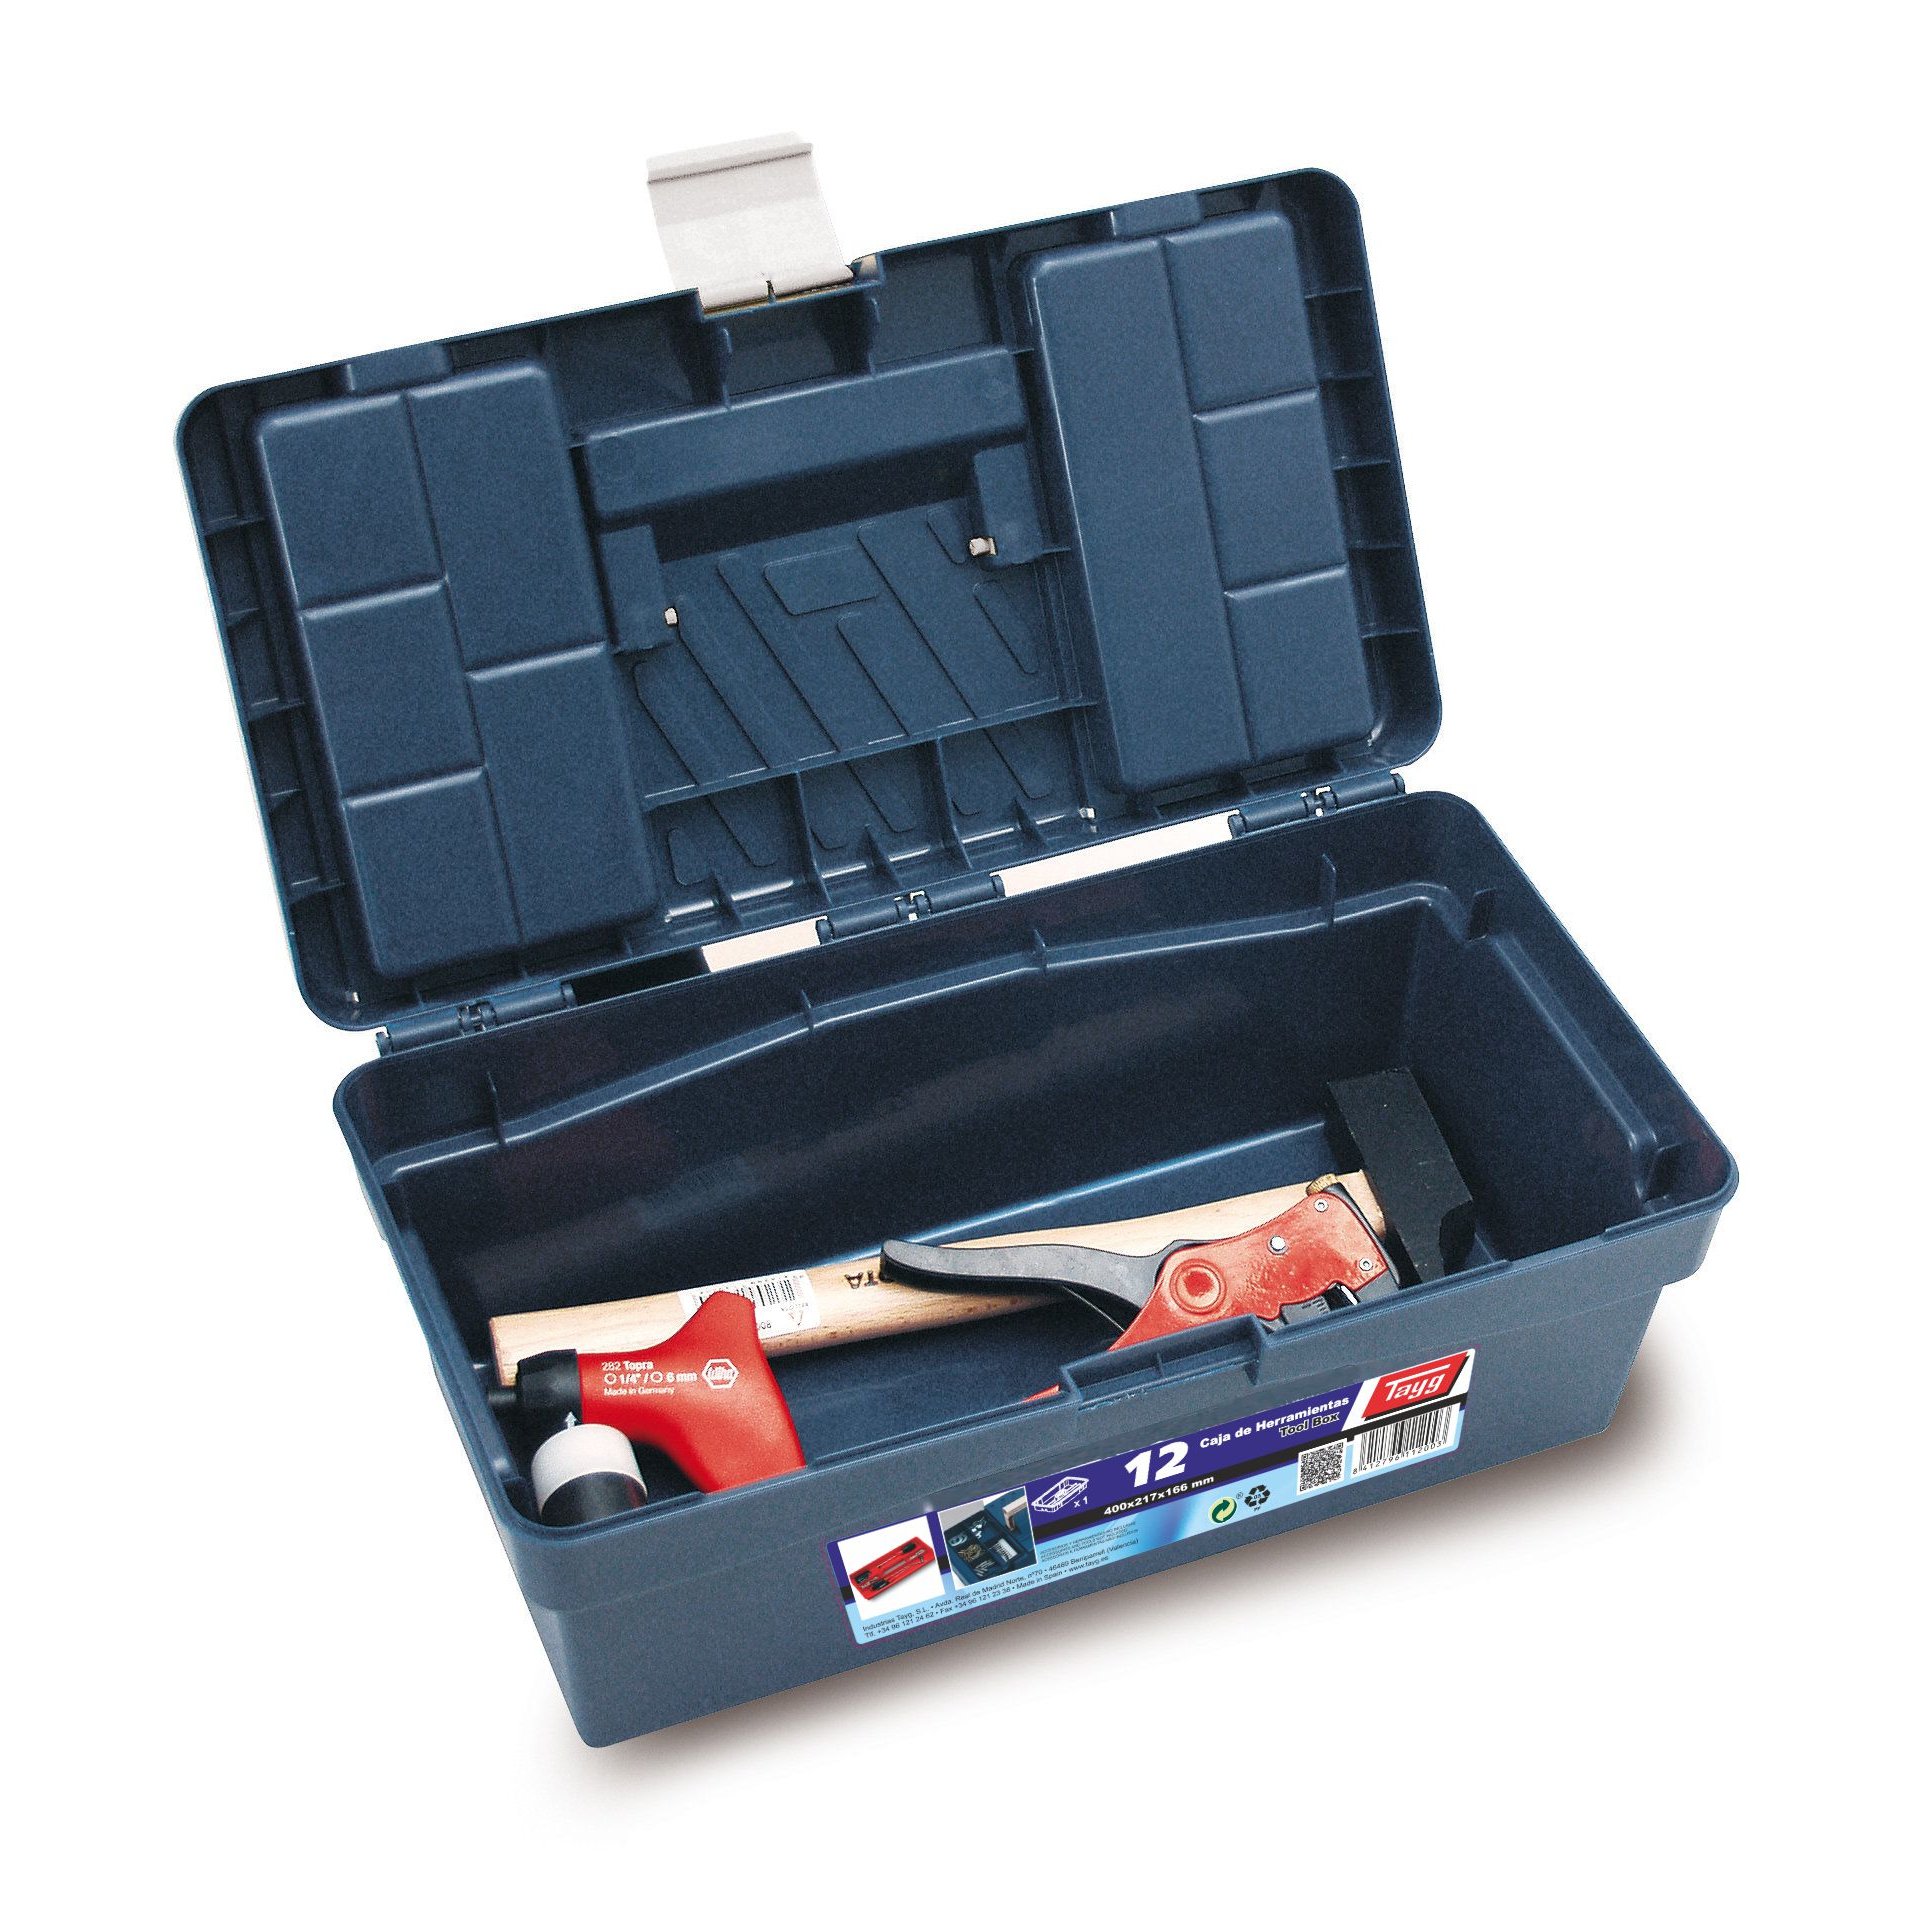 Ящик пластиковий для інструментів Tayg Box 12 Caja htas, 40х21,7х16,6 см, синій (112003) - фото 3